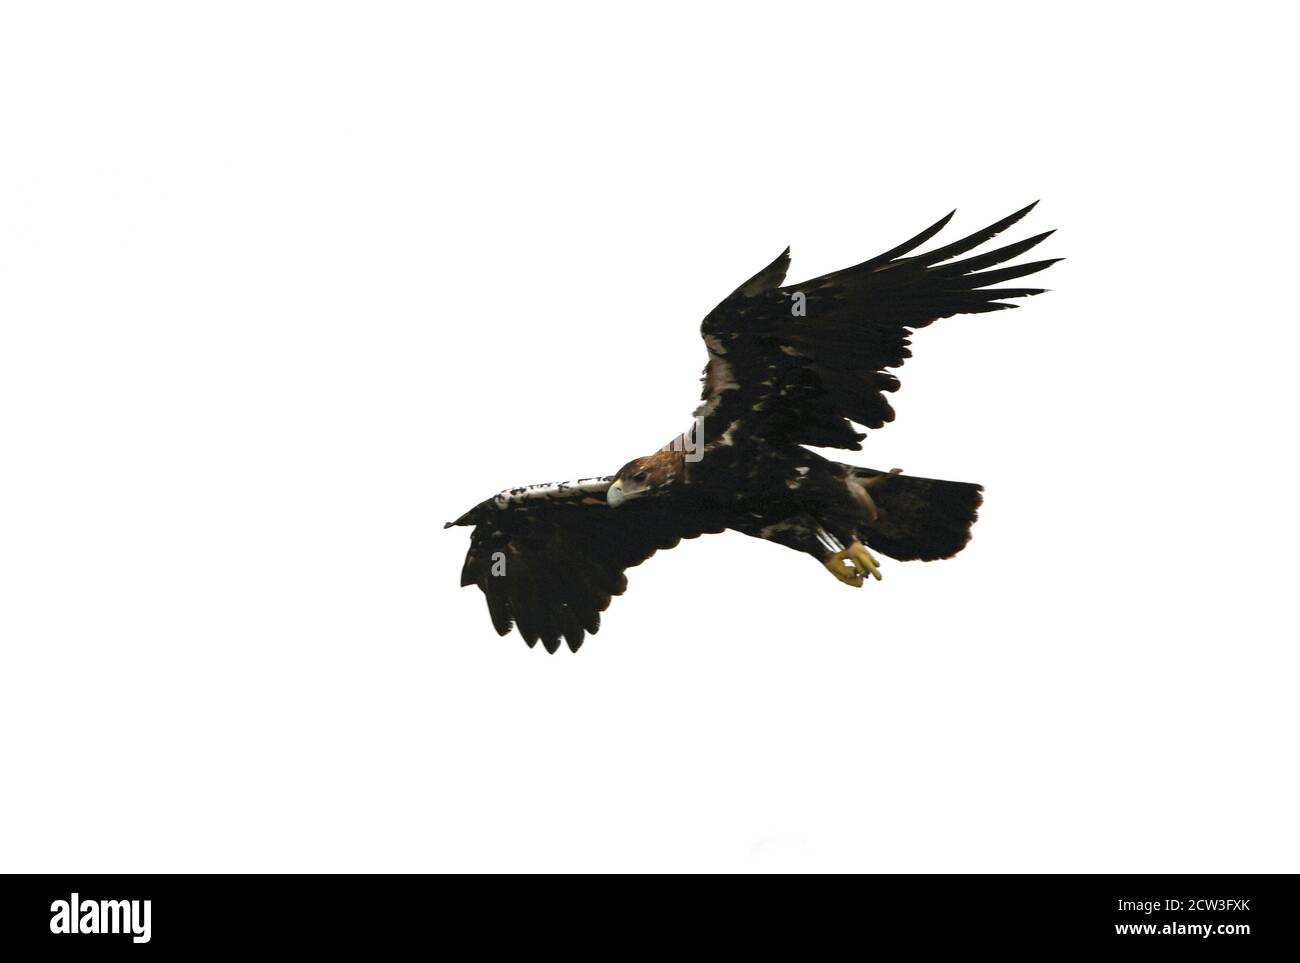 Aquila imperiale spagnola femmina adulta che vola in una foresta mediterranea con la prima luce del giorno Foto Stock